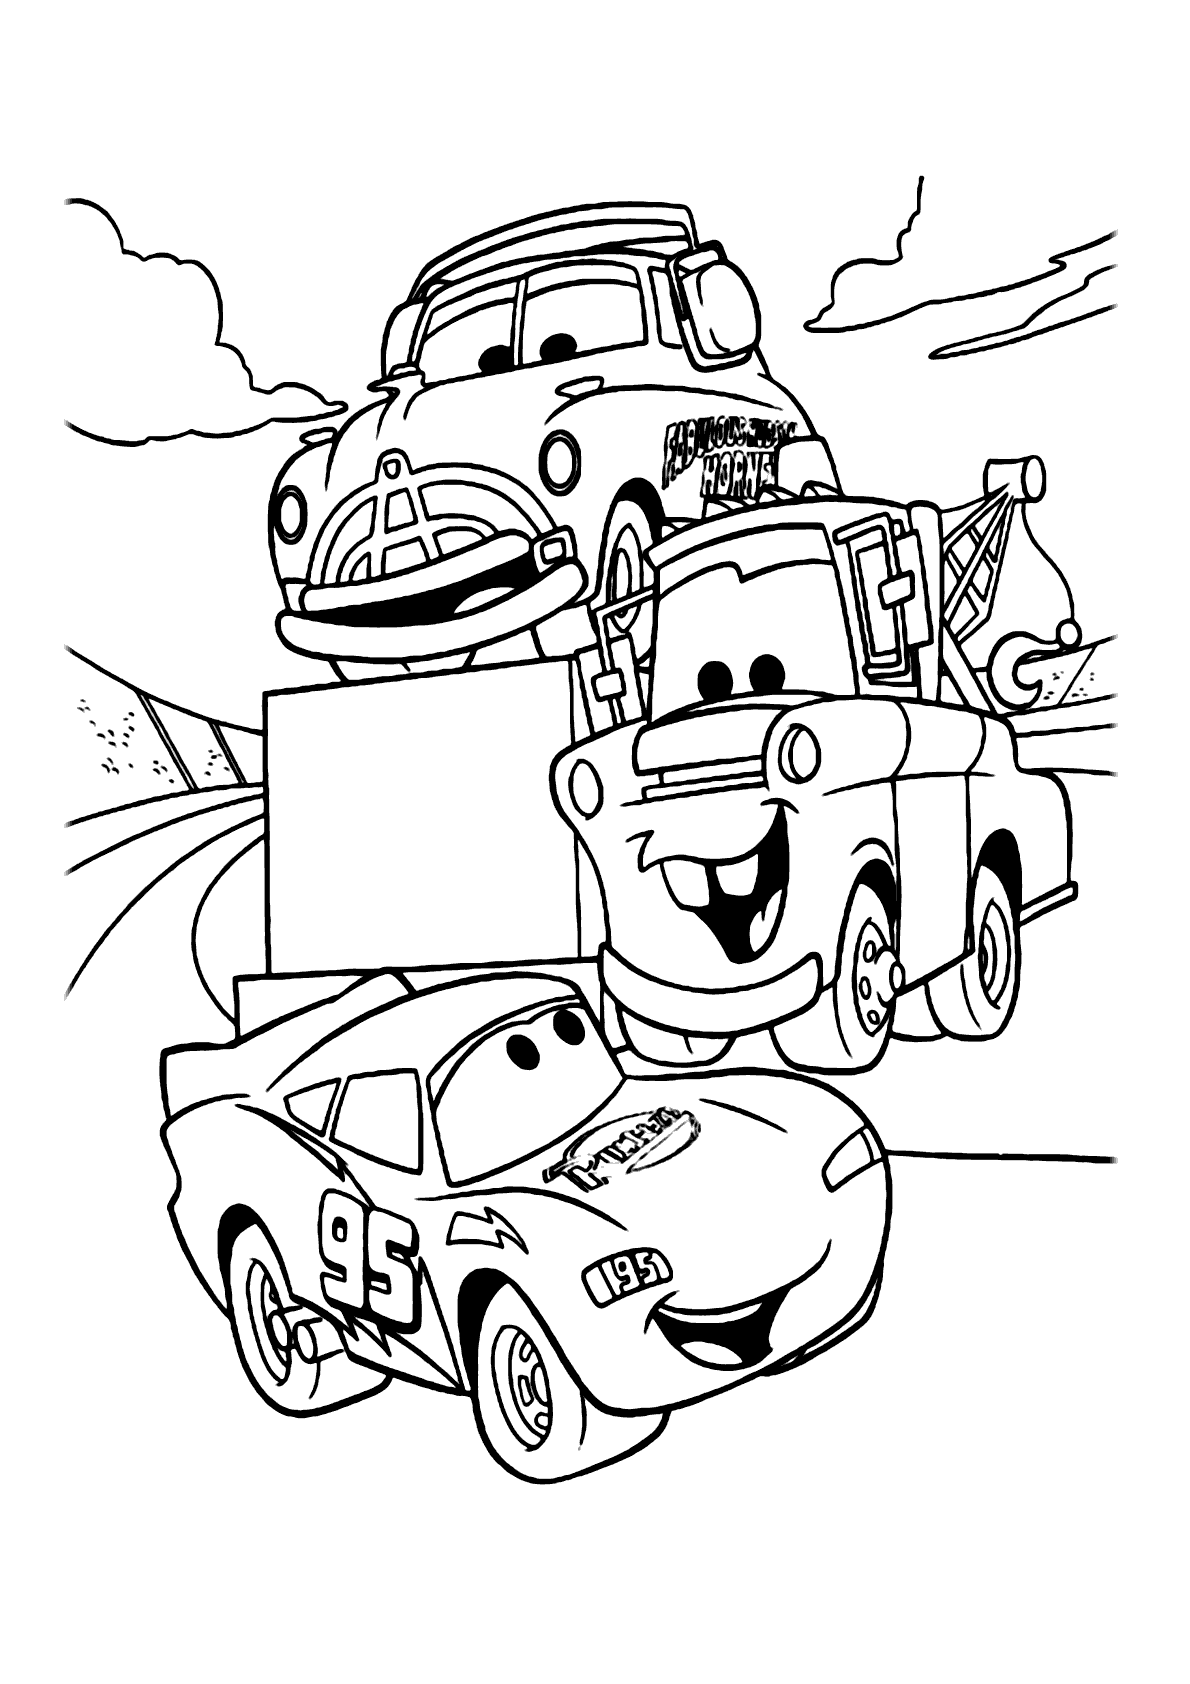 Desenhos de carros e motos para colorir - Imagui